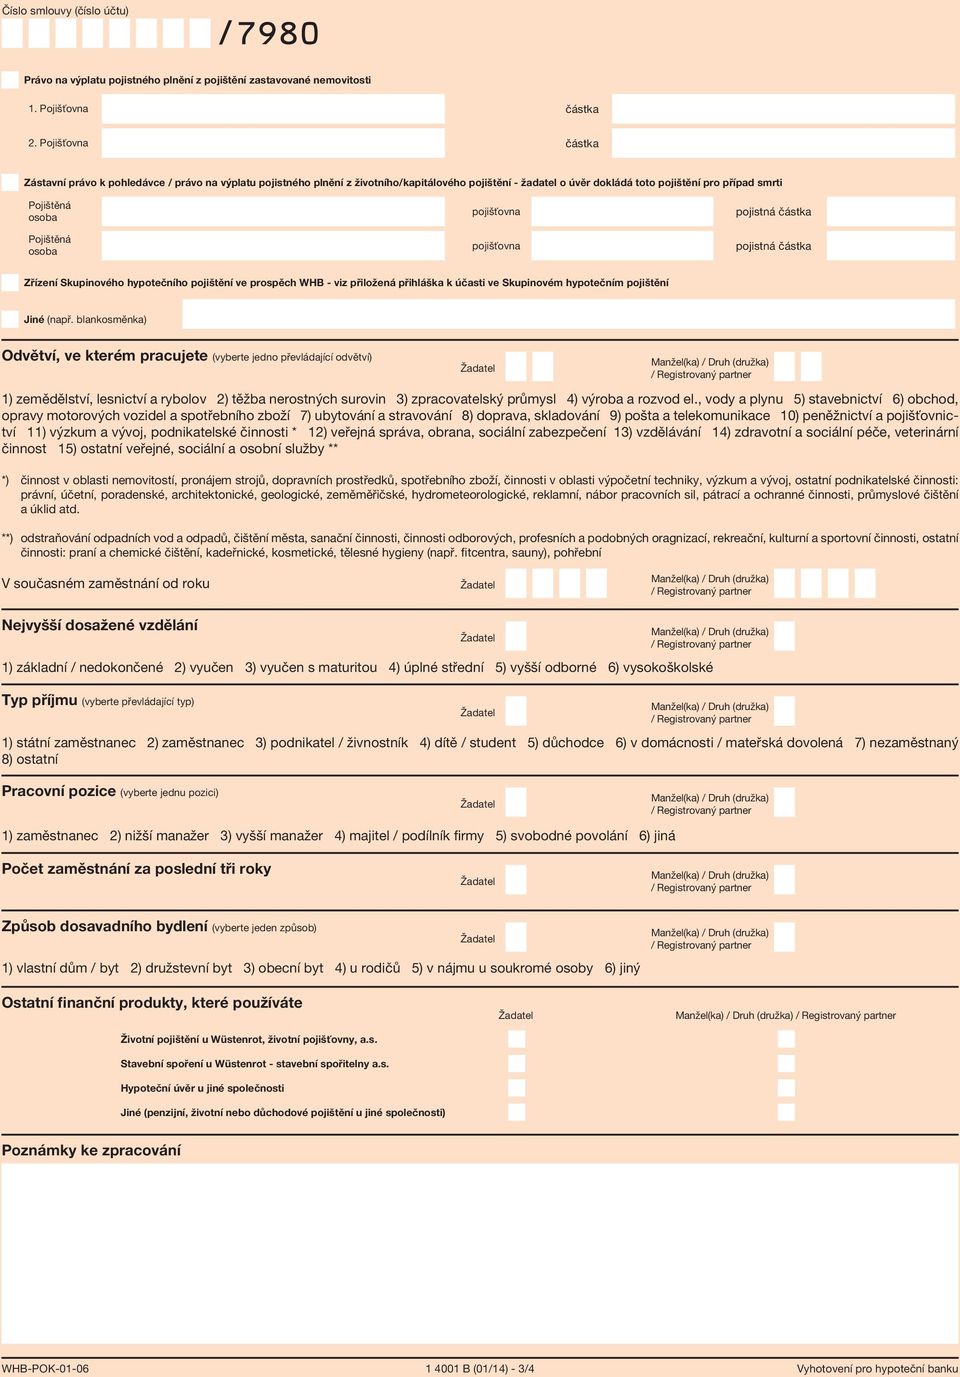 hypotečního pojištění ve prospěch WHB - viz přiložená přihláška k účasti ve Skupinovém hypotečním pojištění Jiné (např blankosměnka) Odvětví, ve kterém pracujete (vyberte jedno převládající odvětví)